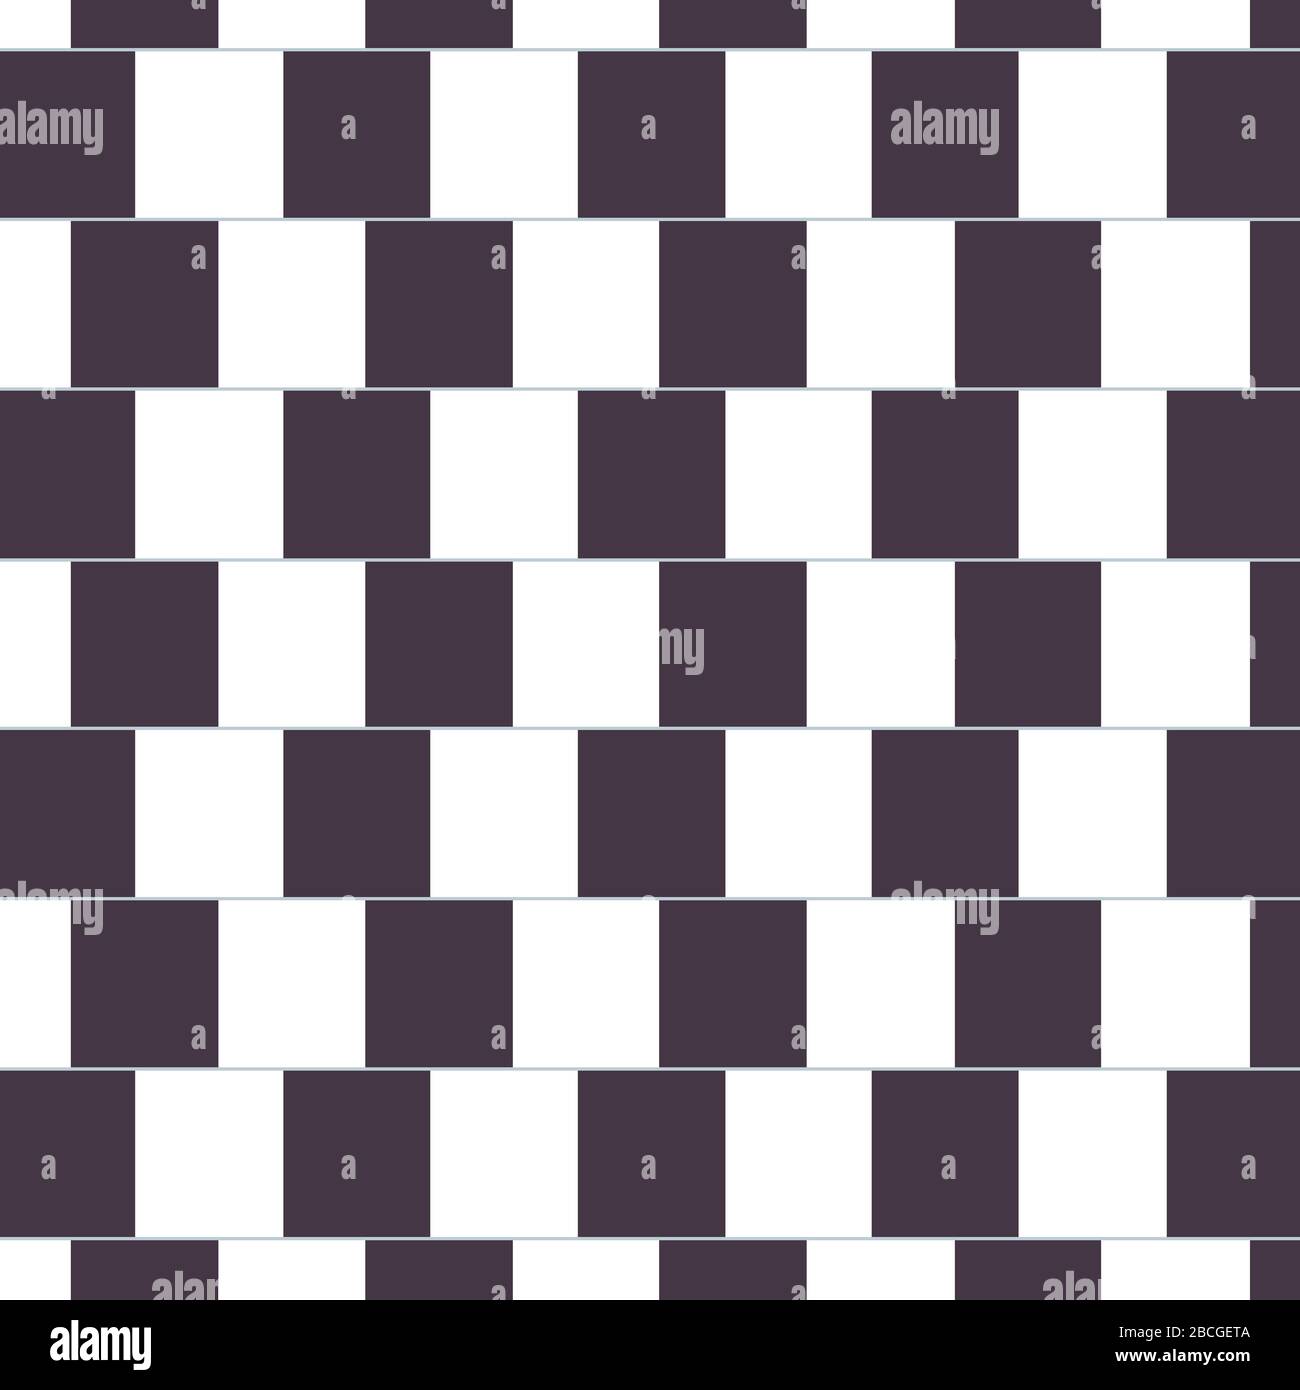 Die Café-Wand-Illusion. Die parallel verlaufenden geraden Trennlinien zwischen gestaffelten Reihen mit abwechselnd schwarz-weißen "Ziegelsteinen" scheinen geschlungen zu sein. Stockfoto